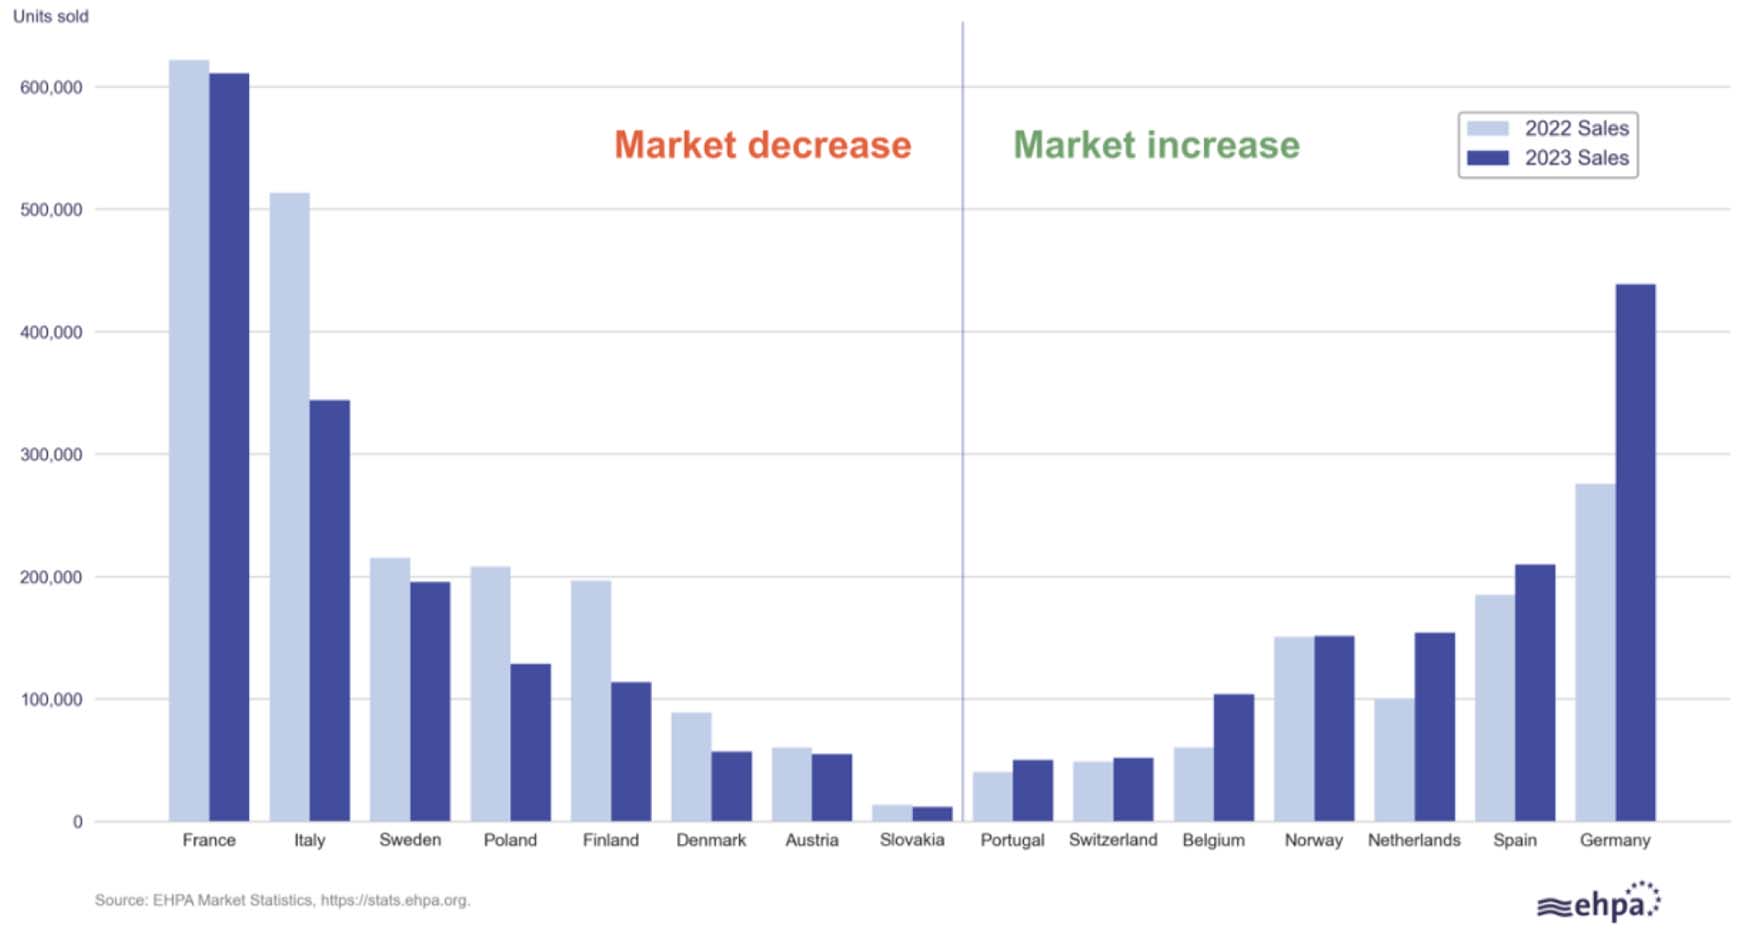 As vendas de bombas de calor diminuram na maioria dos mercados europeus em 2030